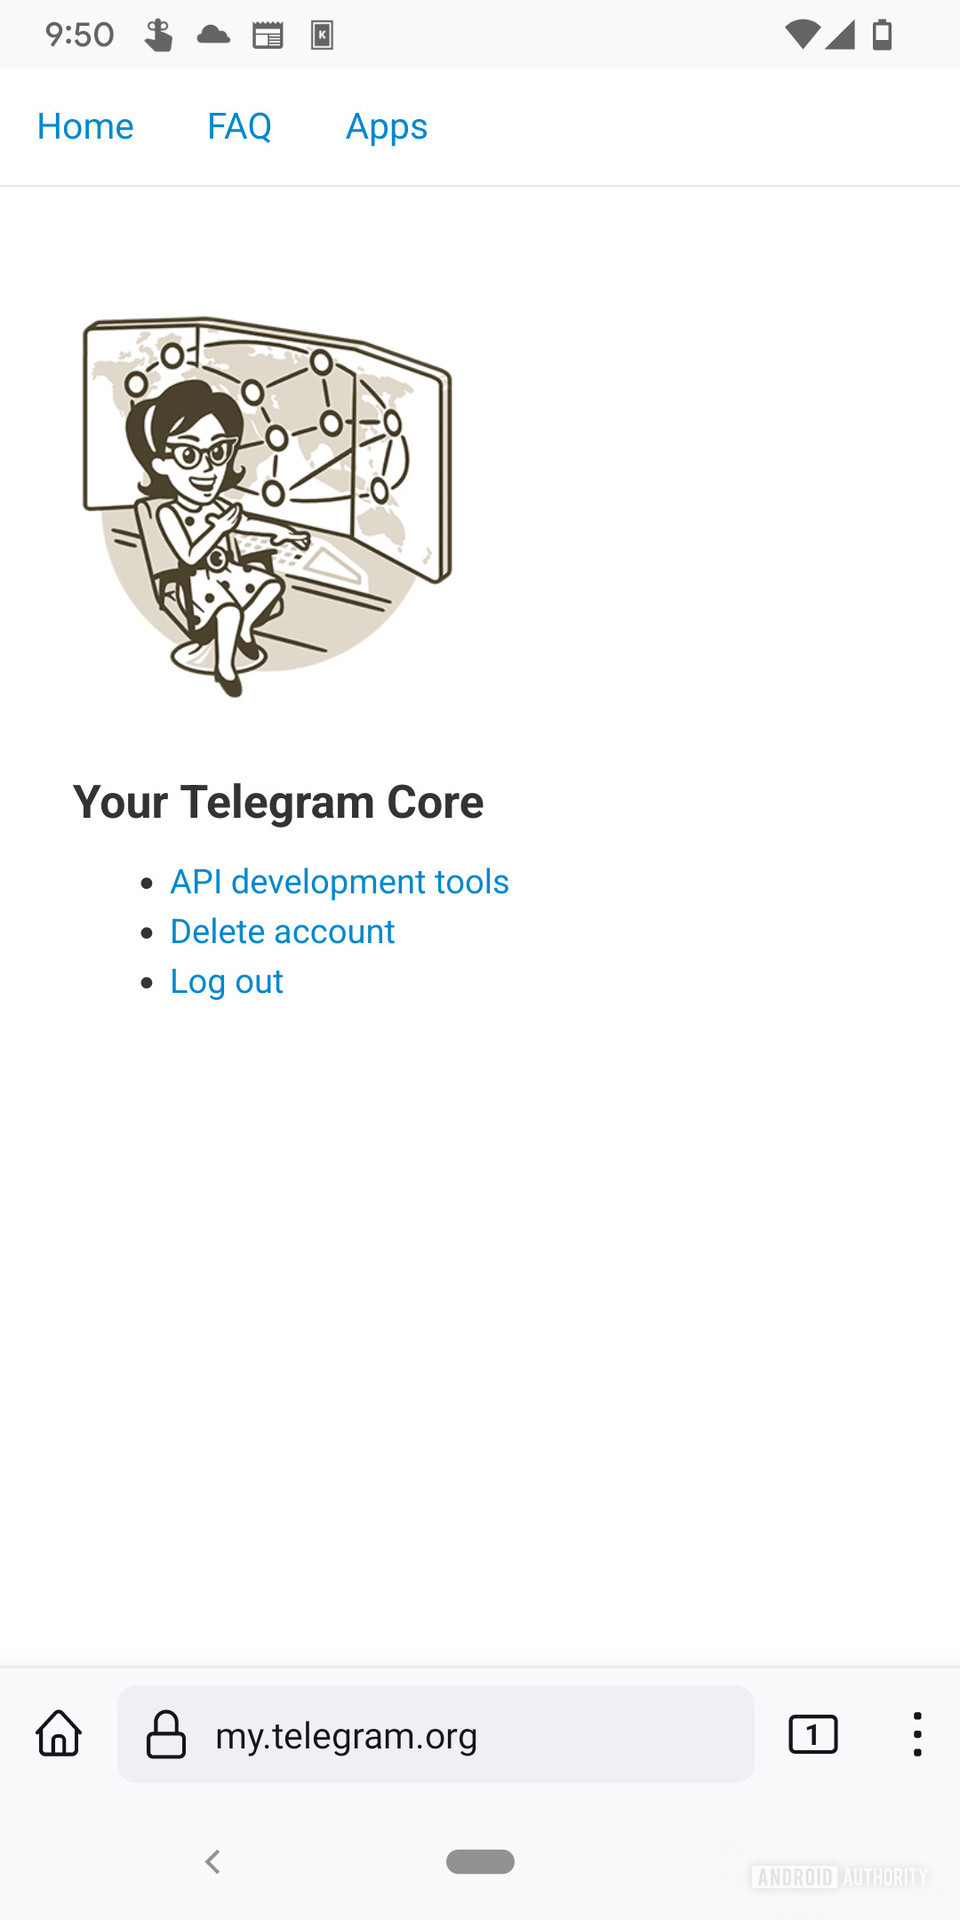 登录显示标题后，Telegram Web Auth Portal读取“您的电报核心”，其中包括各种选项，包括“删除帐户”。